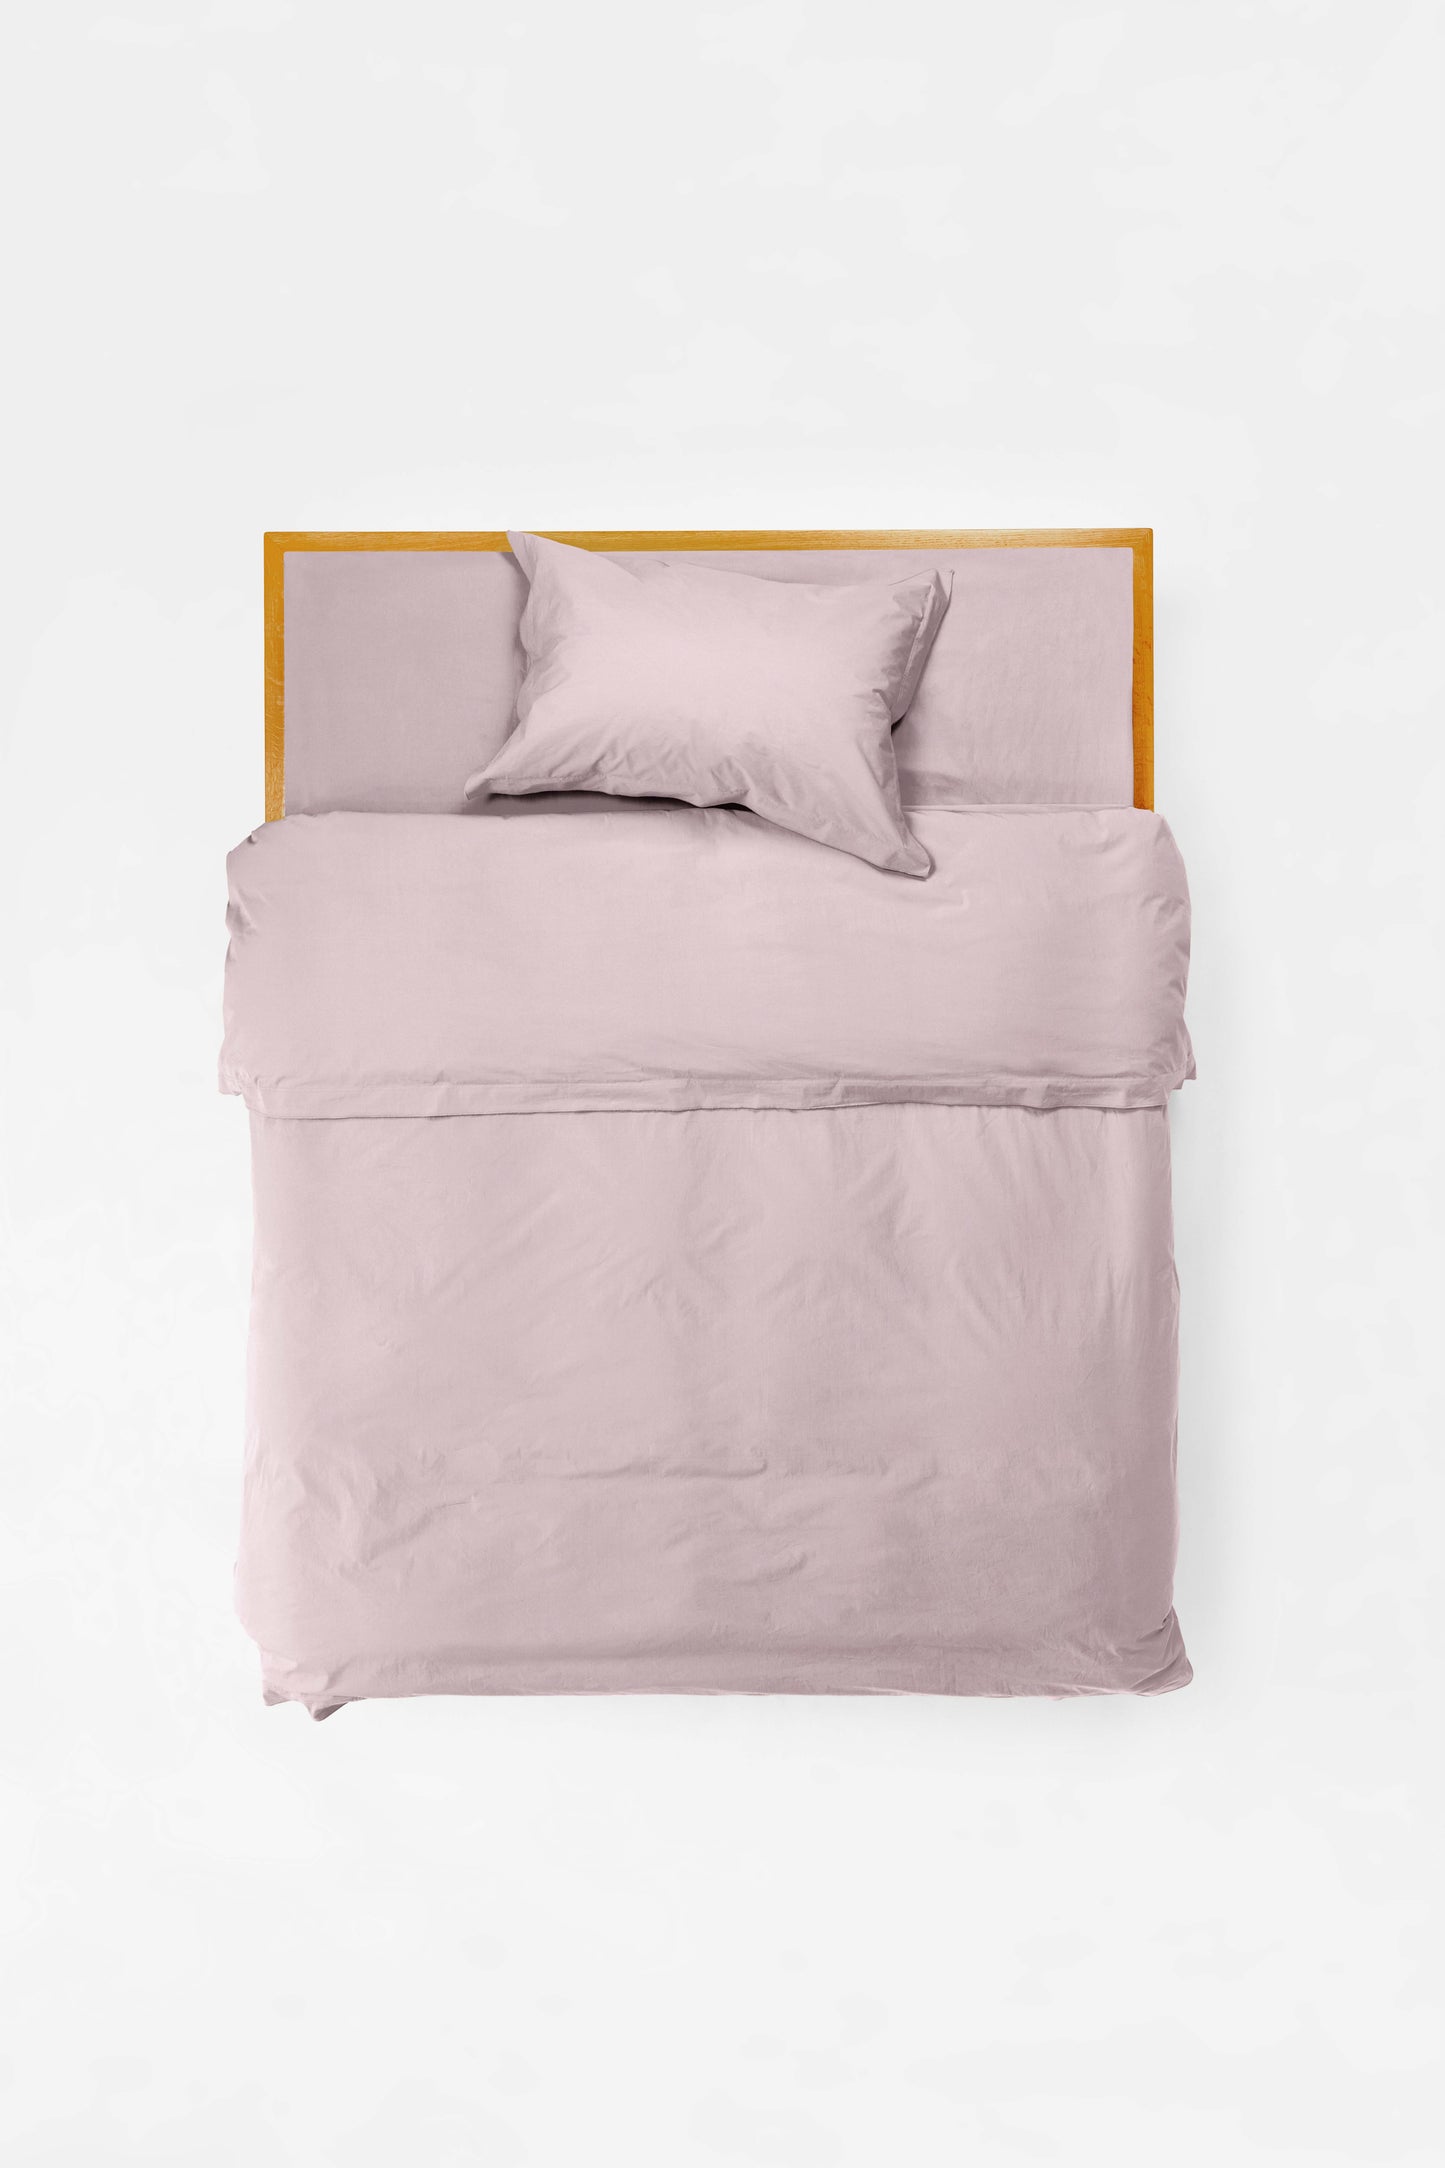 Pillowcase Pair in Lilac